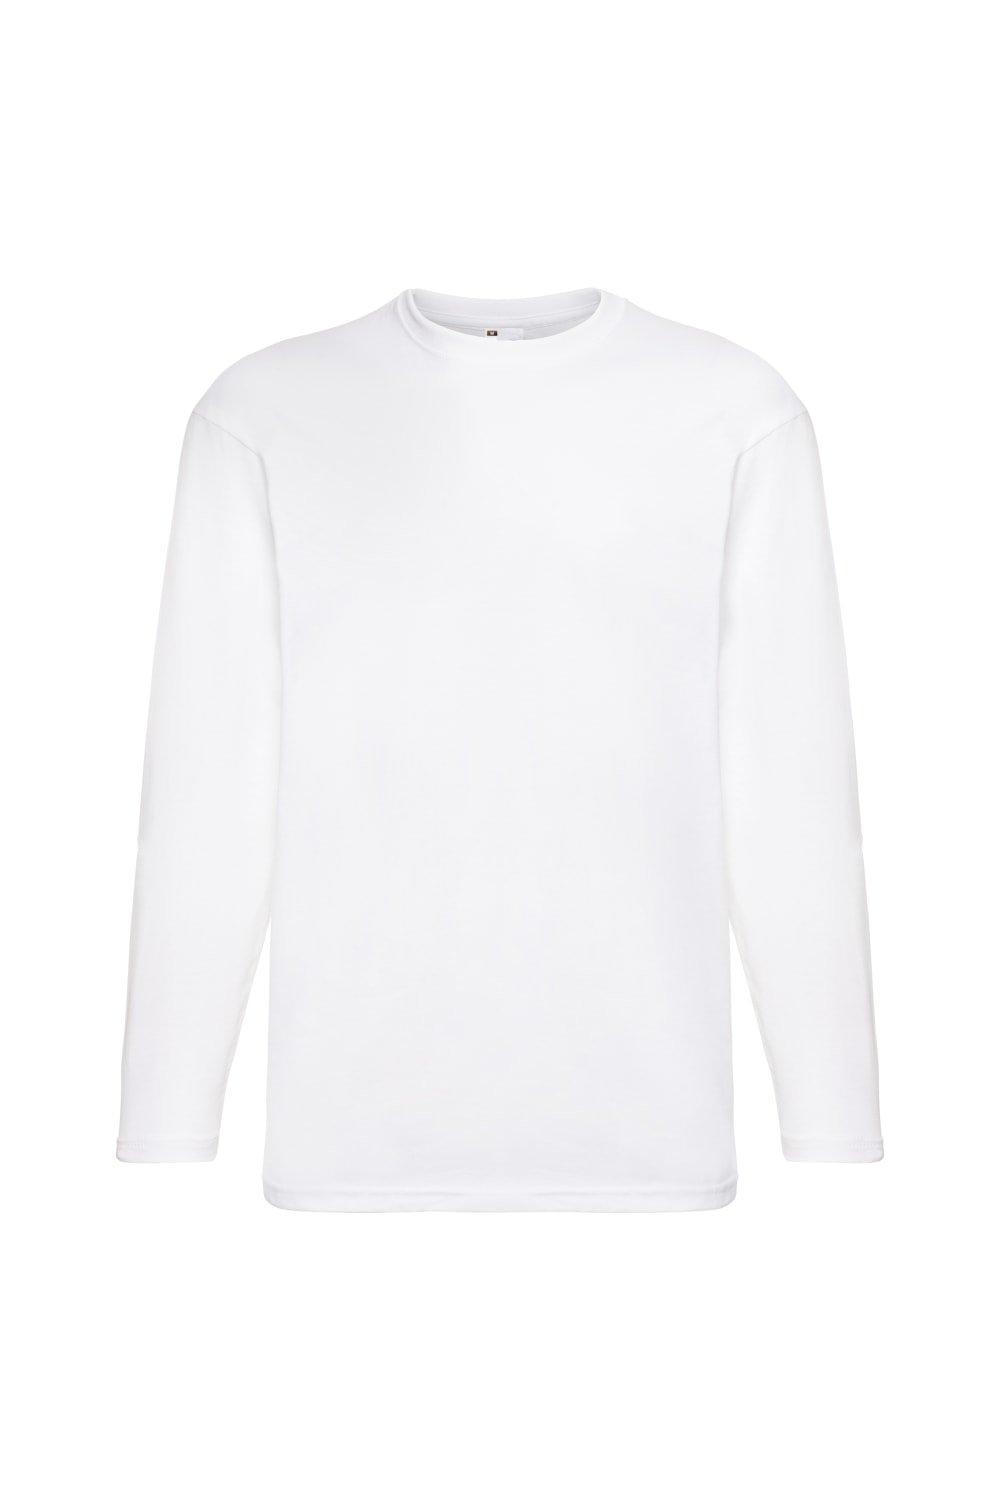 Повседневная футболка Value с длинным рукавом Universal Textiles, белый мужская футболка хороший день для кофе 2xl серый меланж